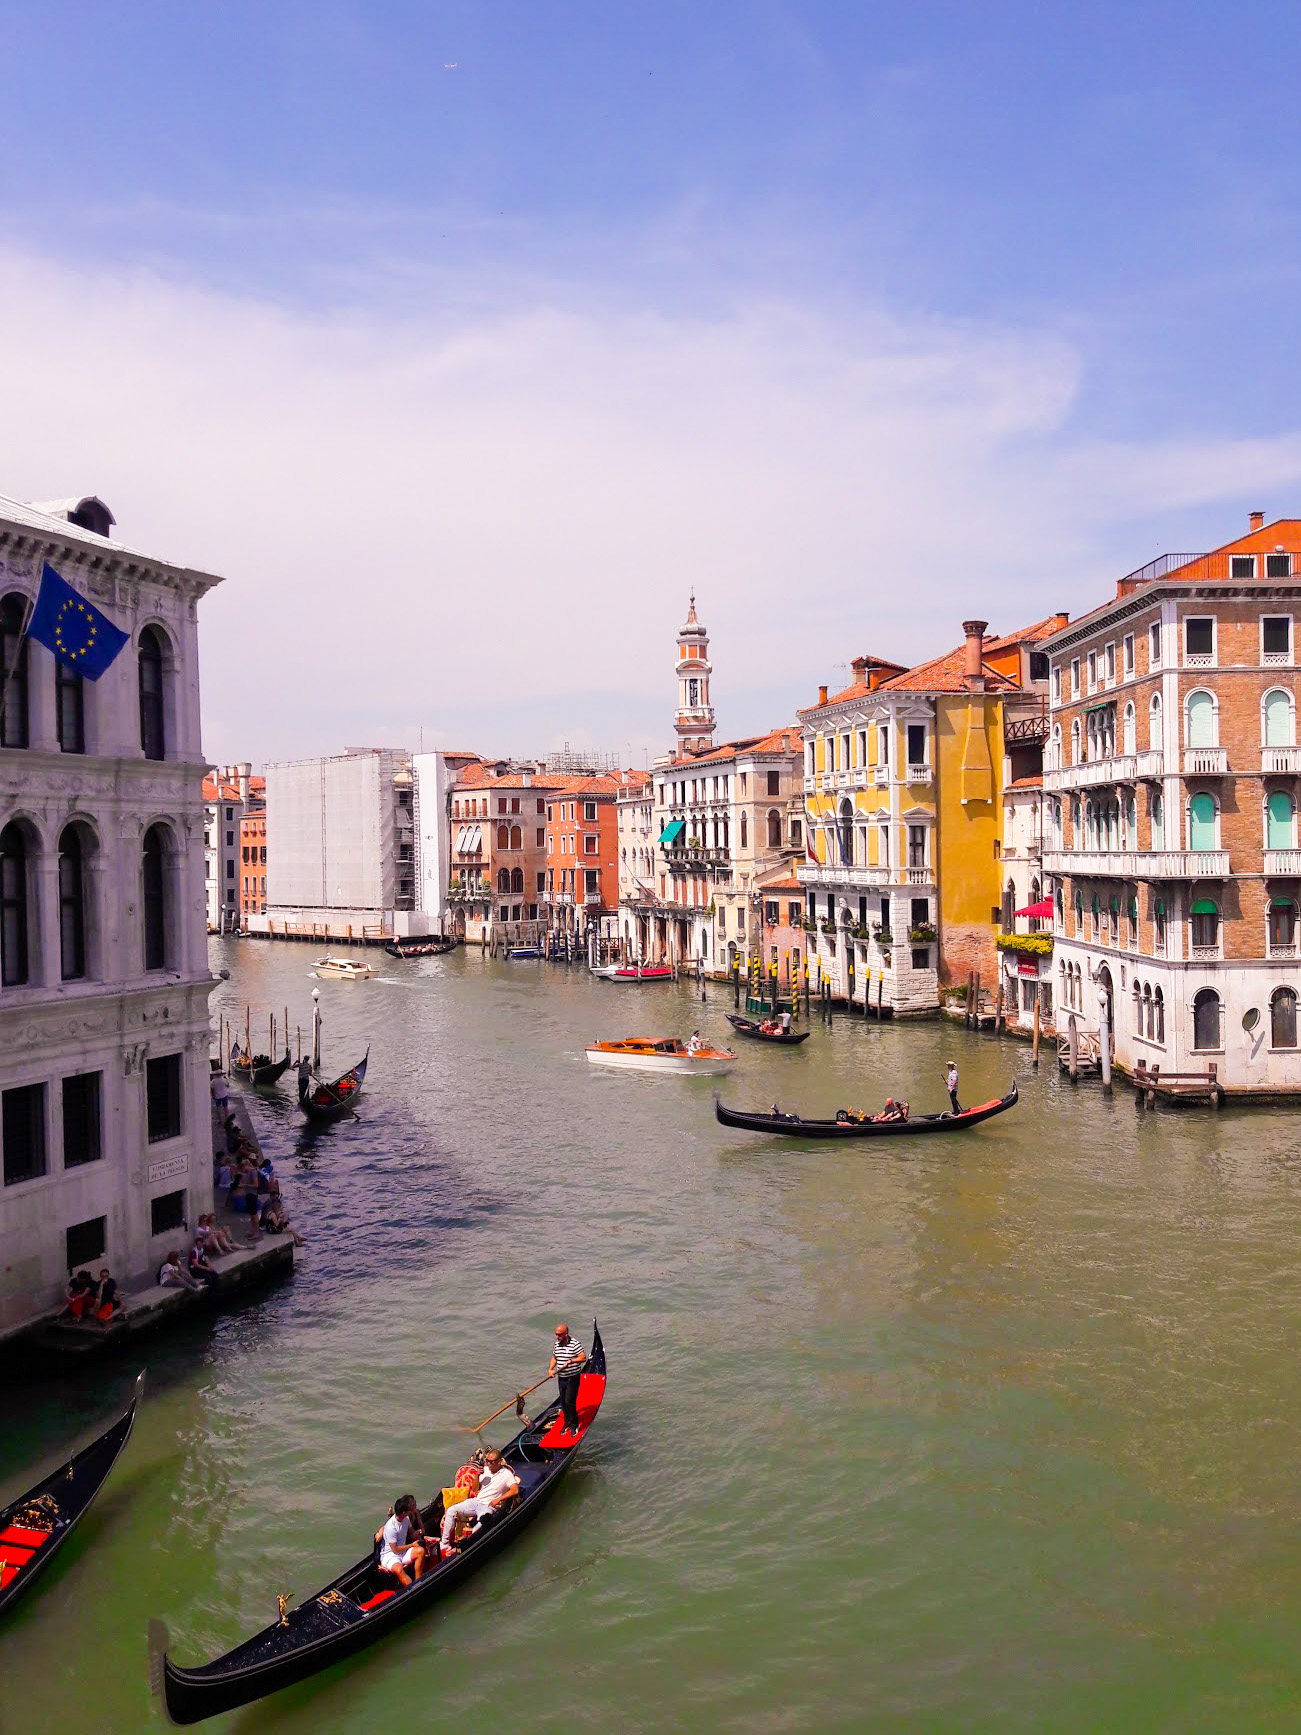 Podróż do Włoch - Wenecja